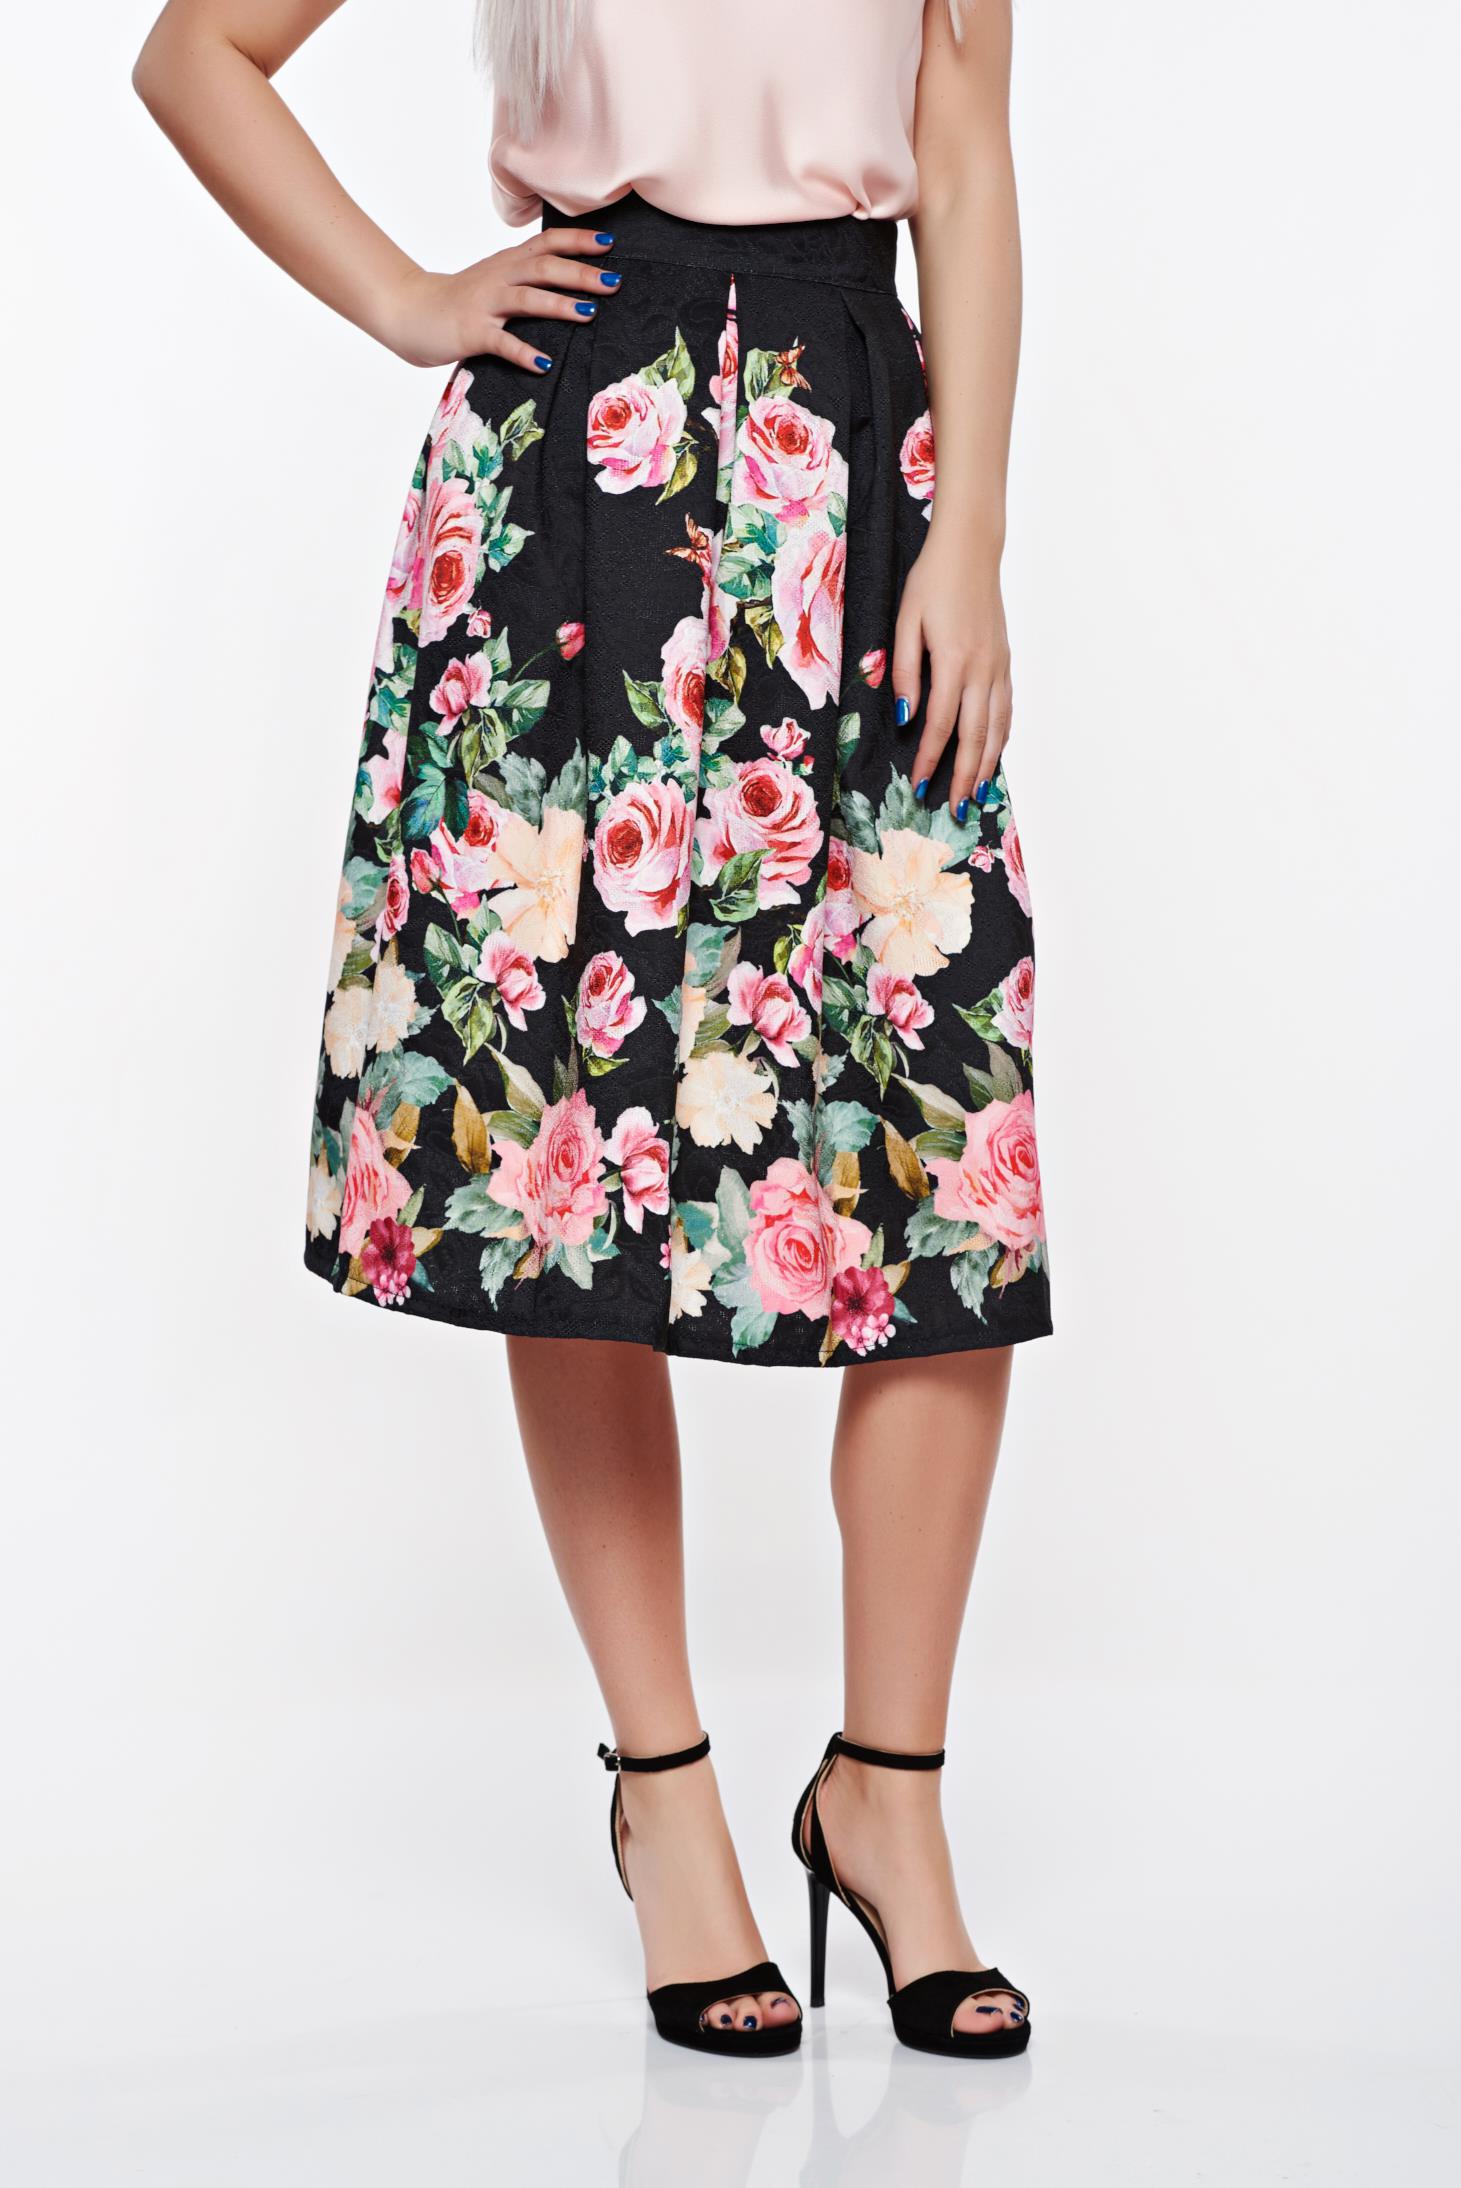 SunShine rosa high waisted elegant cloche skirt from jacquard